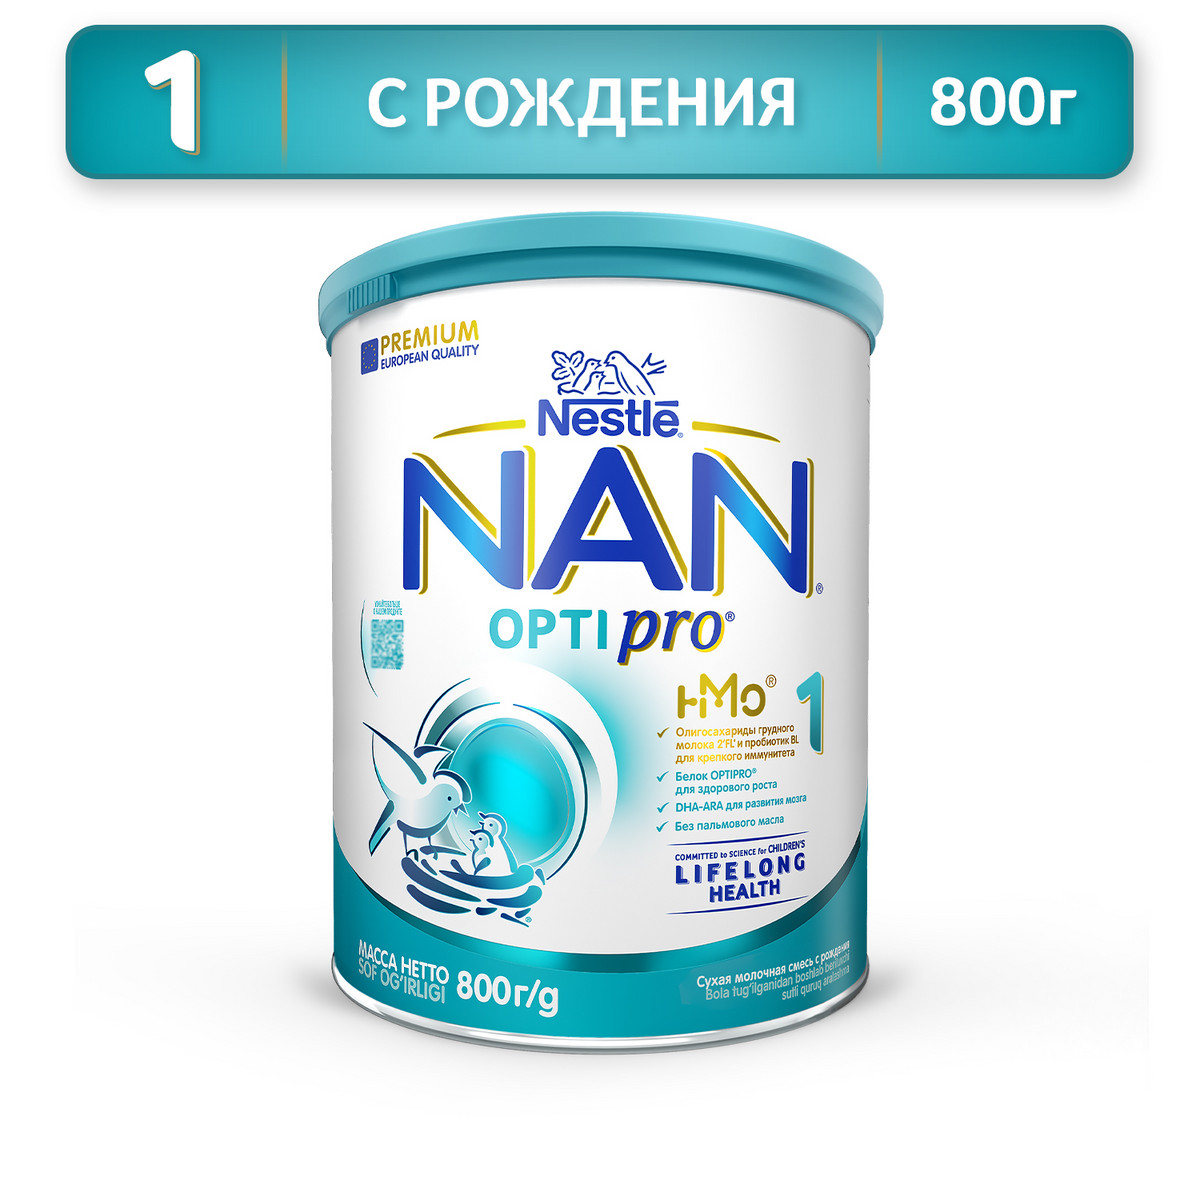 Молочная смесь NAN Optipro 1 от 0 до 6 мес. 800 г цикорий сильный иммунитет и долгая здоровая жизнь инновационный продукт xxi века